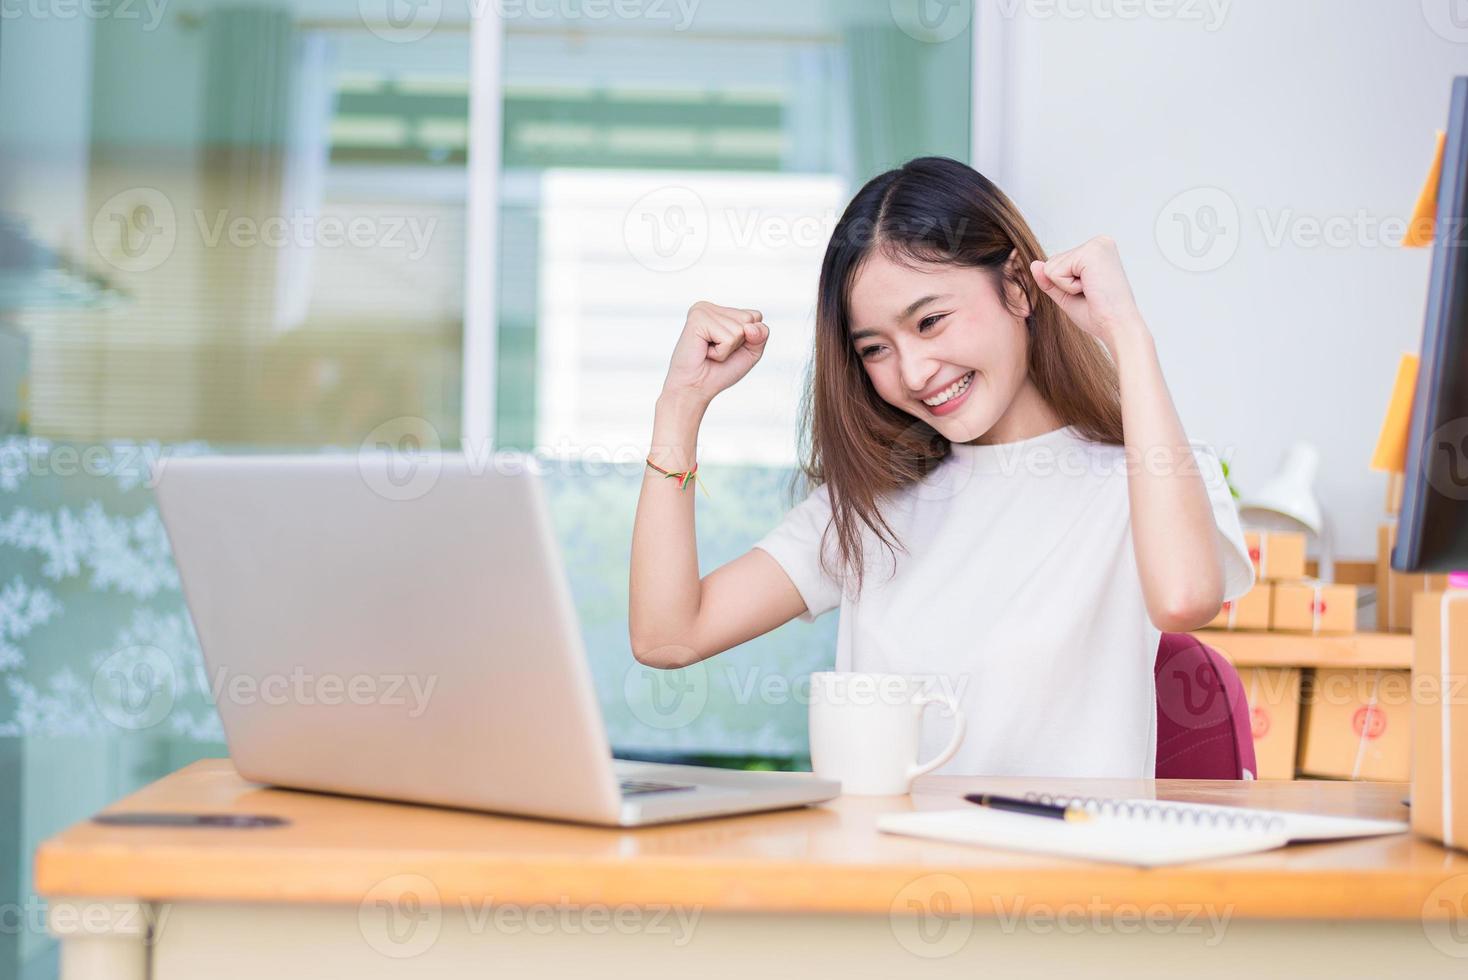 asiatische Frau amüsiert sich bei der Nutzung von Laptops und Internet im Büro foto